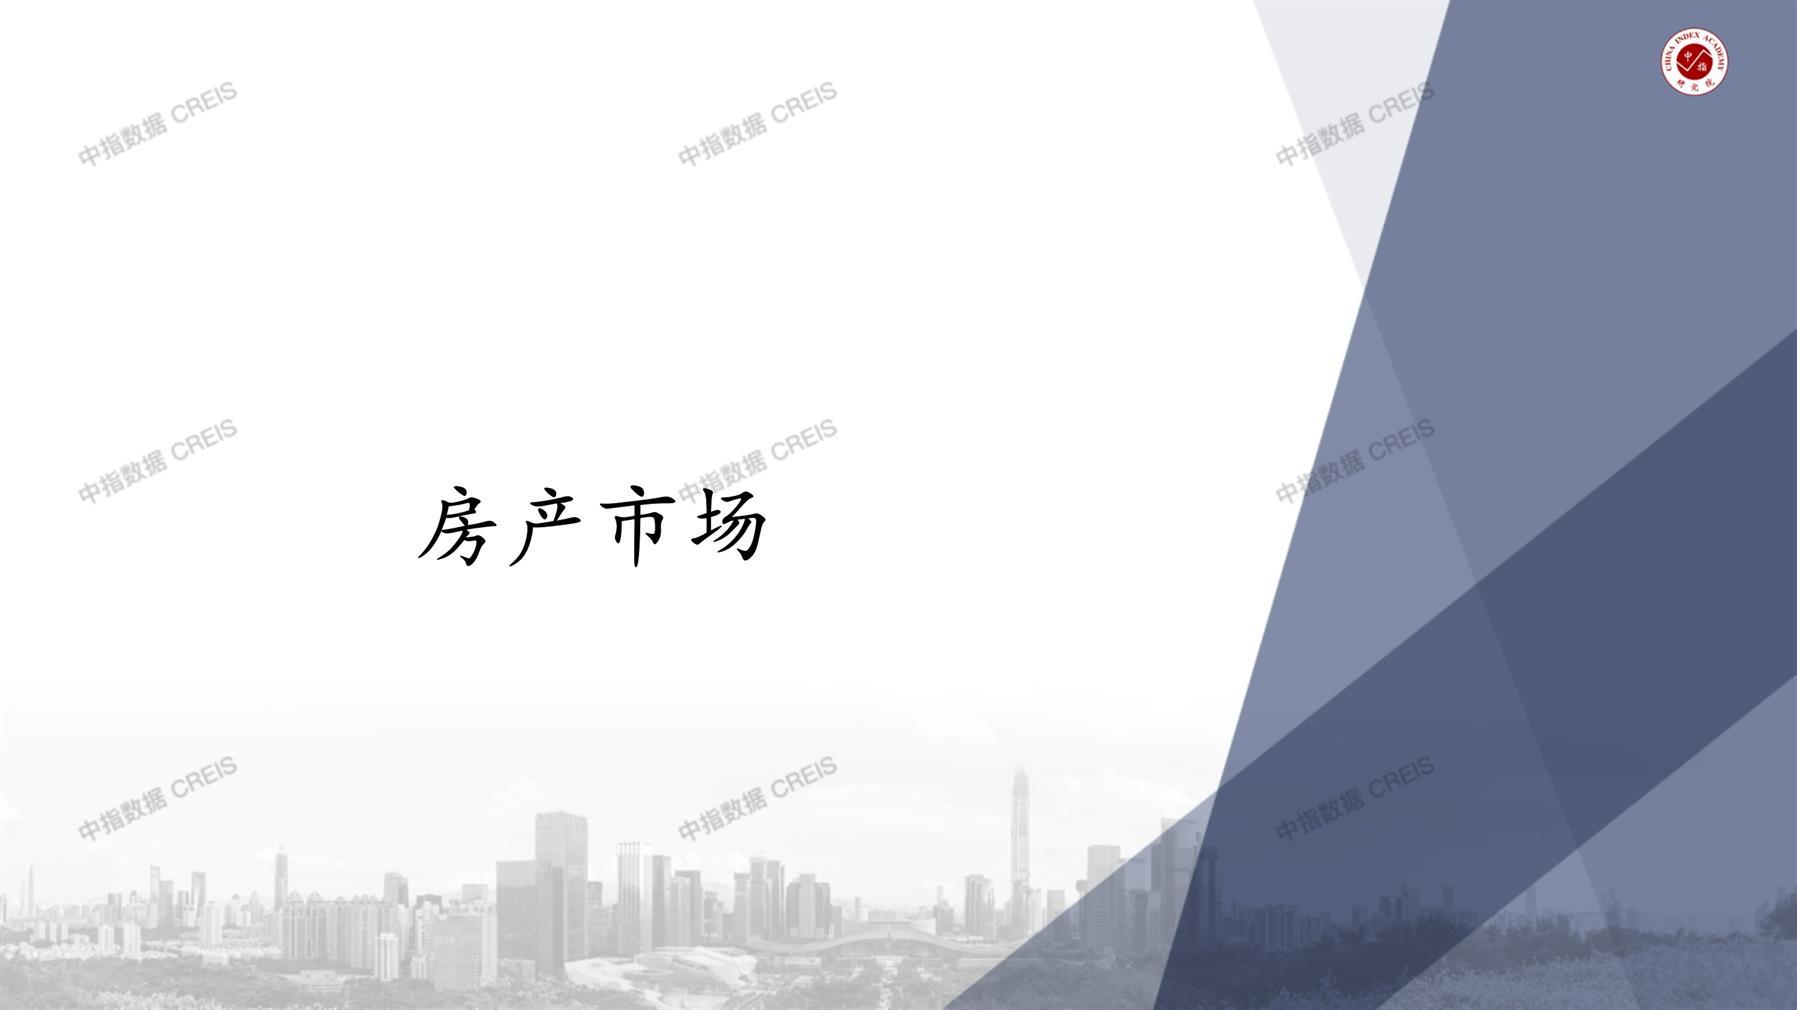 芜湖、芜湖房地产市场、商品房销售、住宅成交、土地市场、地块面积、芜湖写字楼